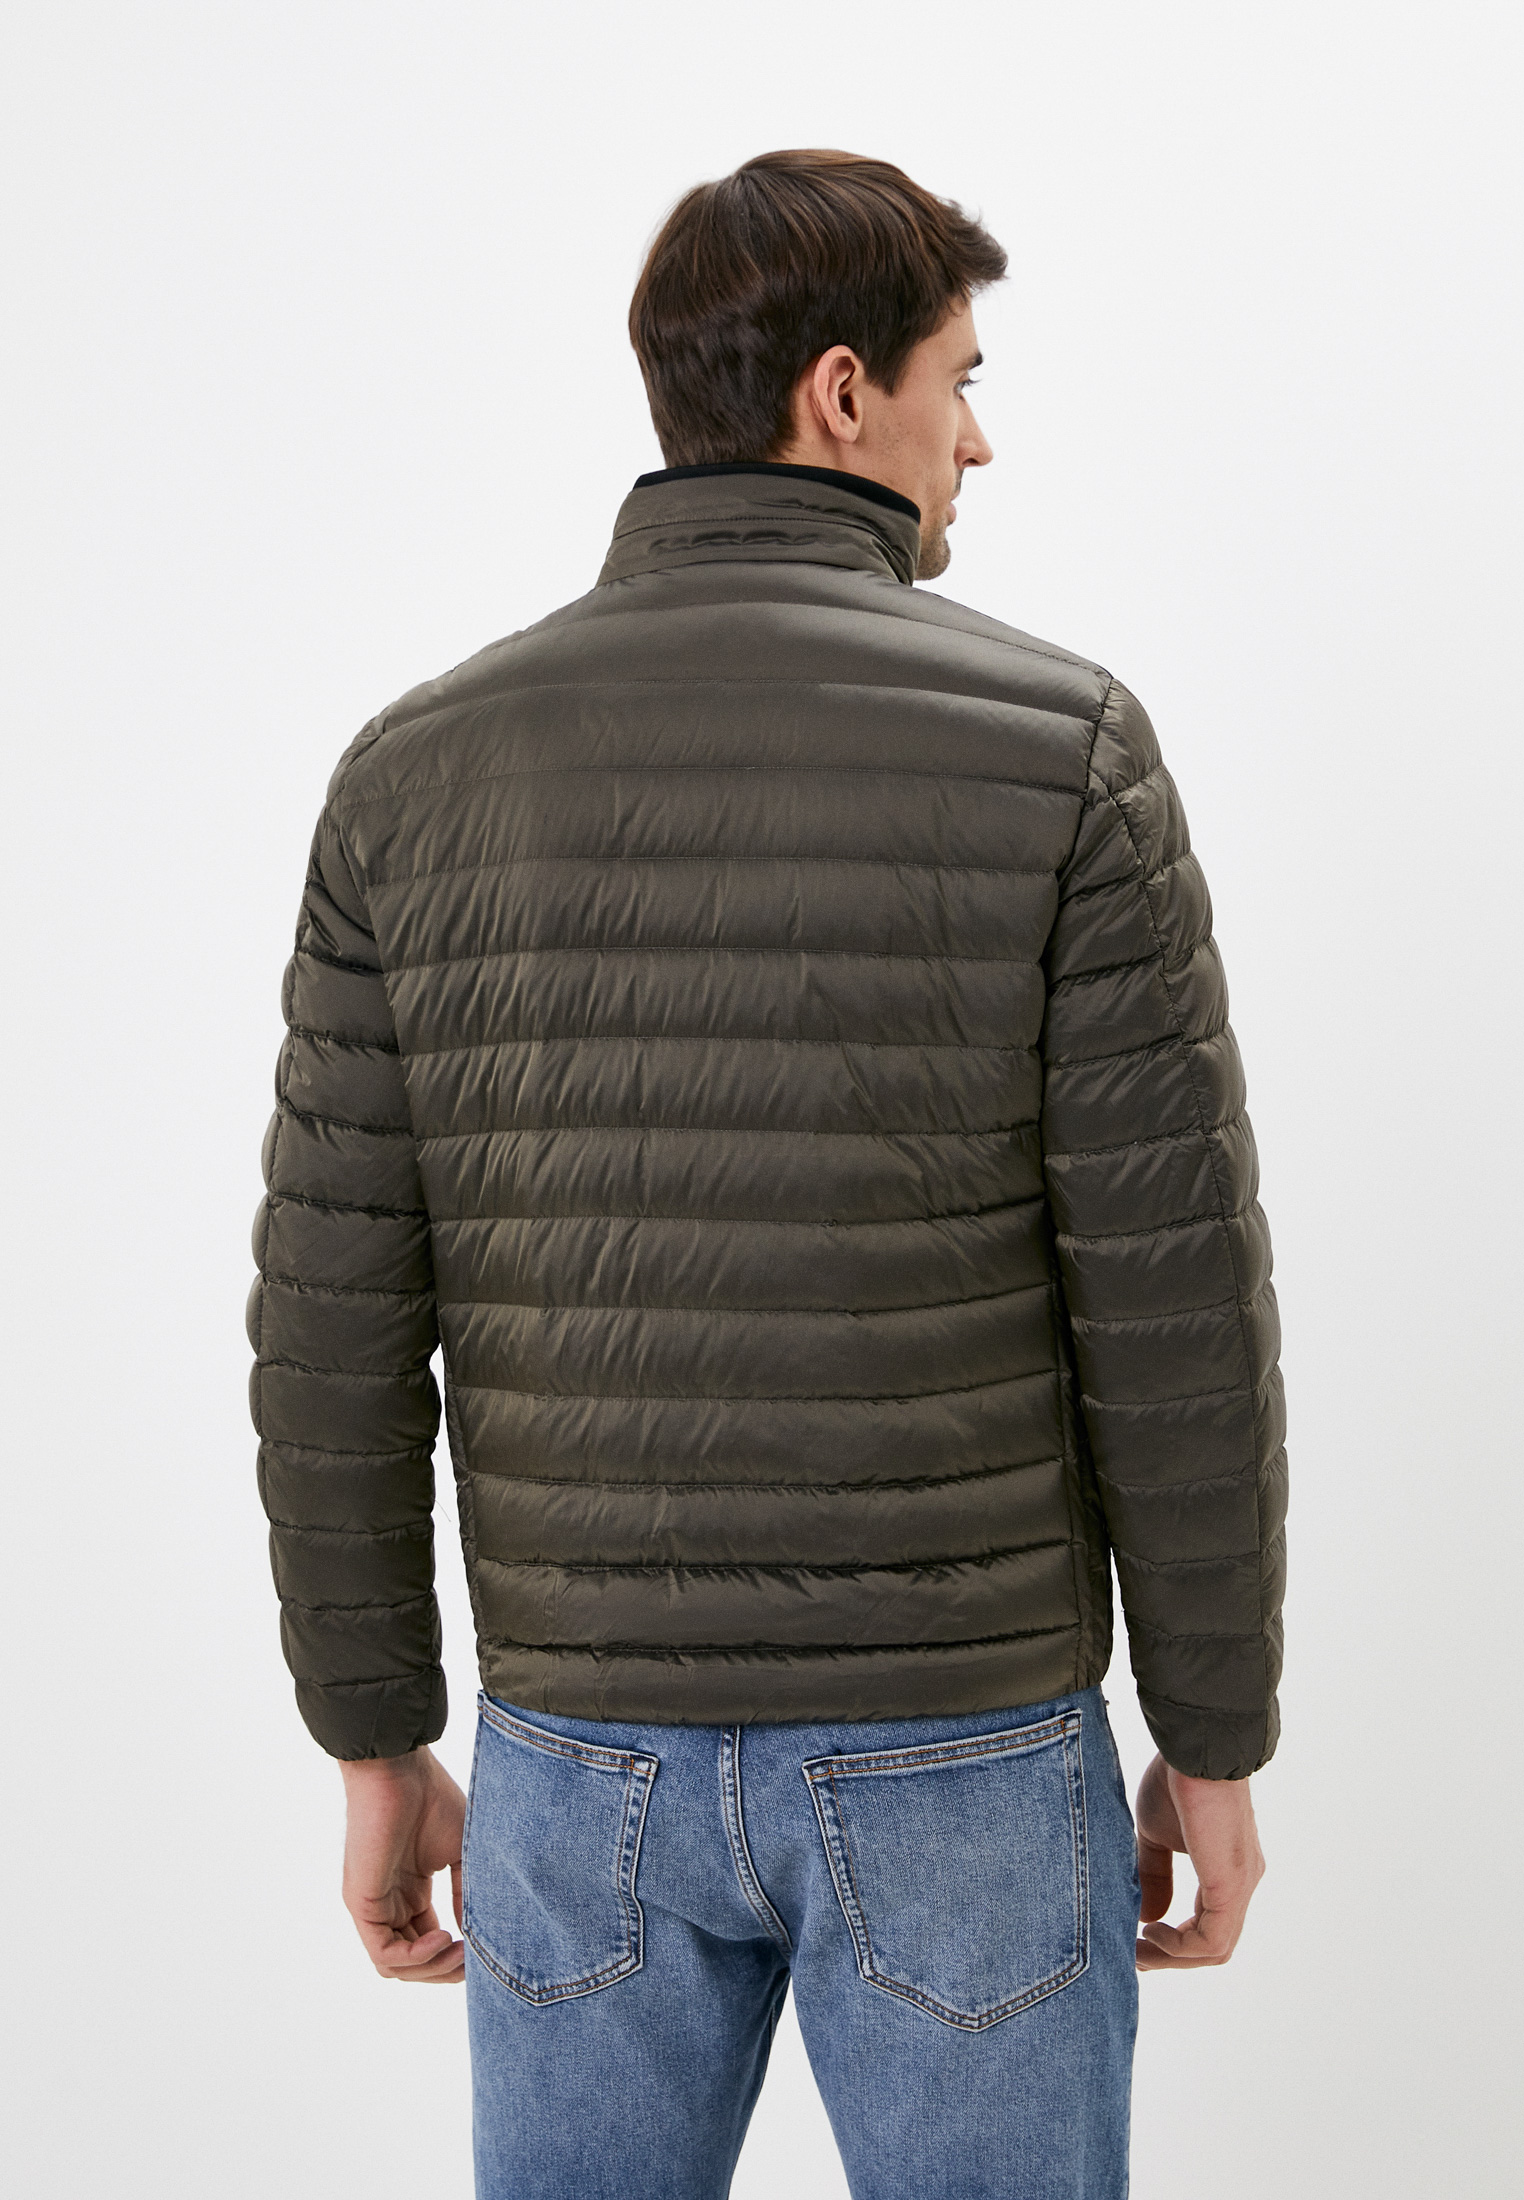 Утепленная куртка мужская Guess Jeans M1RL47WDQ50 цвет хаки купить за 11590  руб.